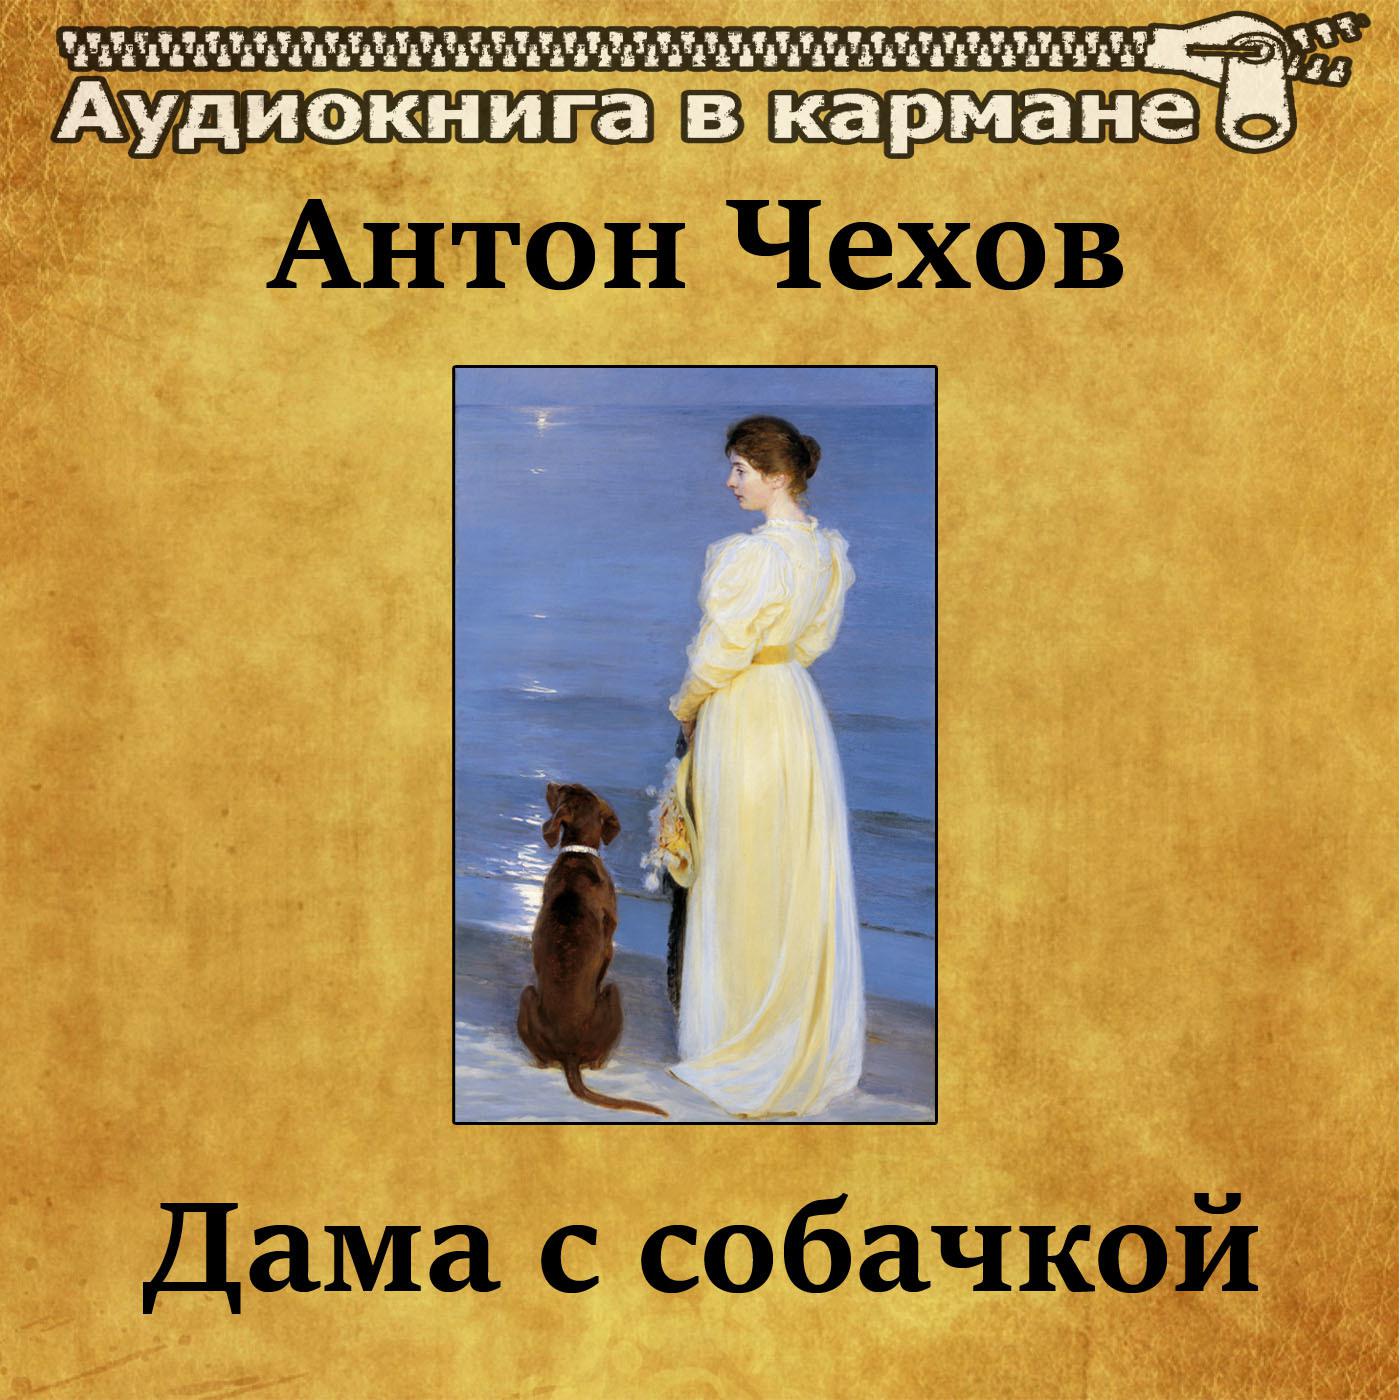 Дама с собачкой содержание по главам. Чехов дама с собачкой книга. Чехов дама с собачкой аудиокнига. Чеховская дама с собачкой.